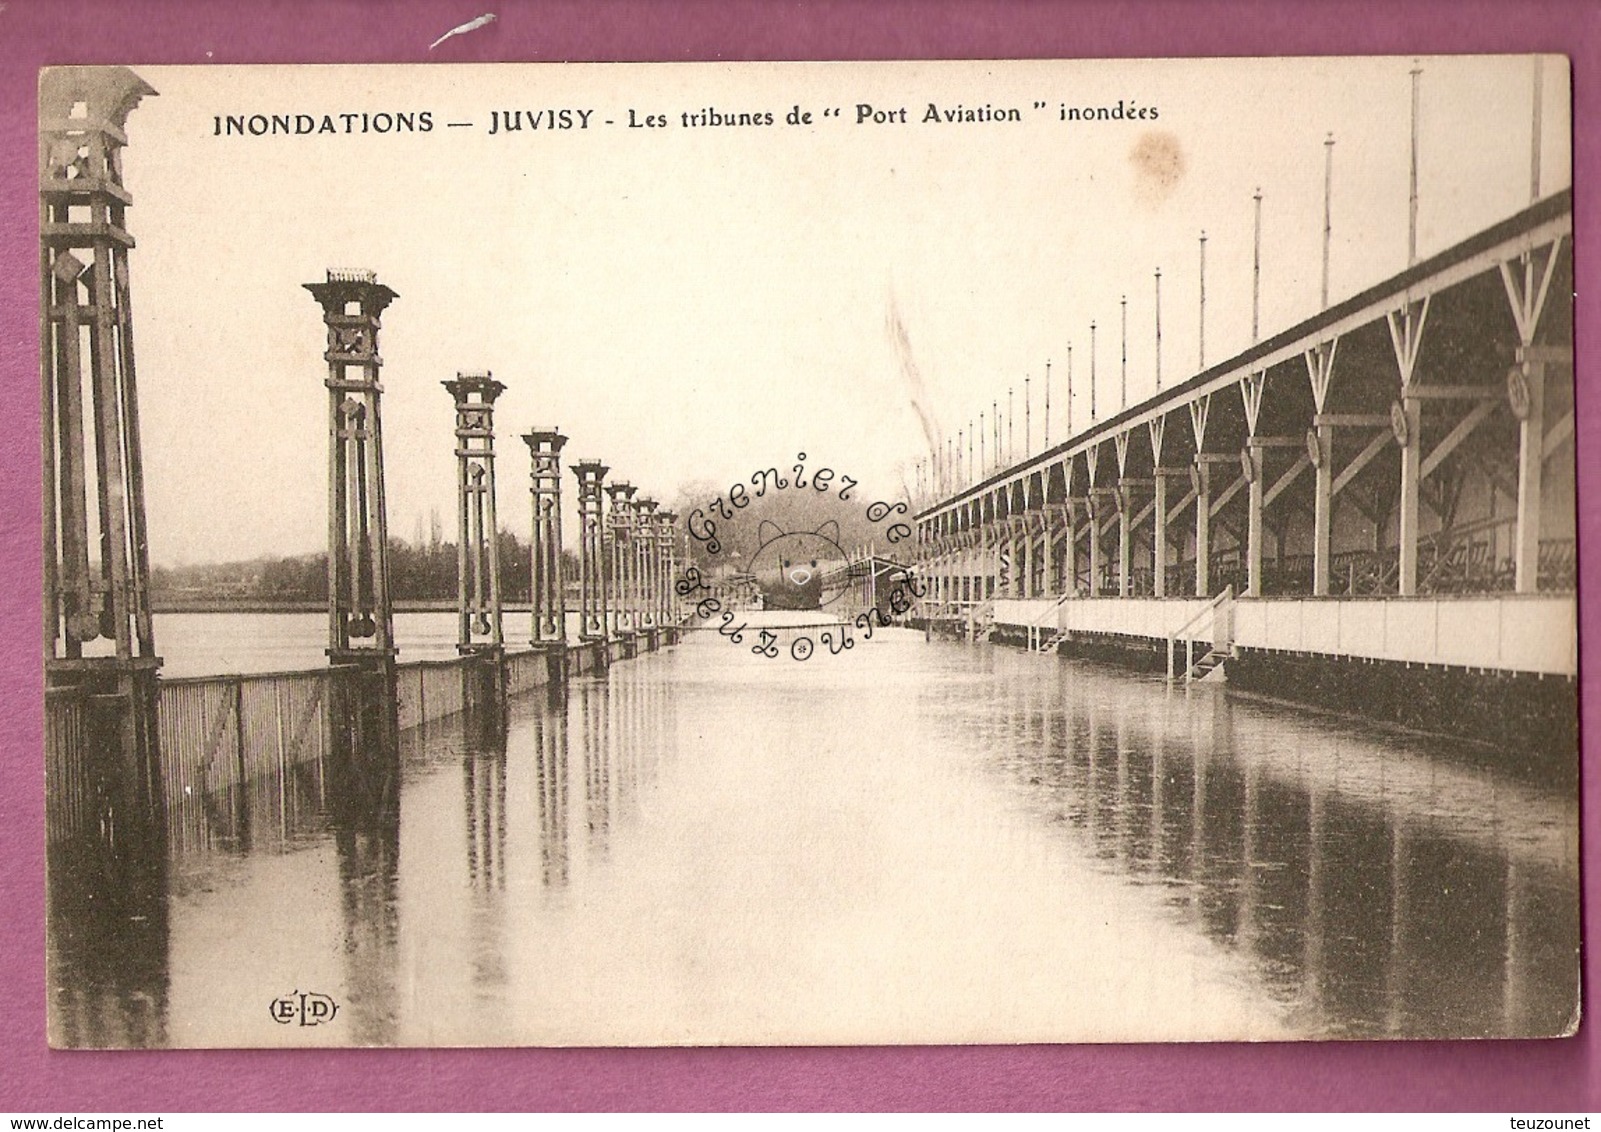 Cpa  Inondations 1910 - Juvisy Les Tribunes De Port Aviation Inondees - éditeur ELD - Juvisy-sur-Orge